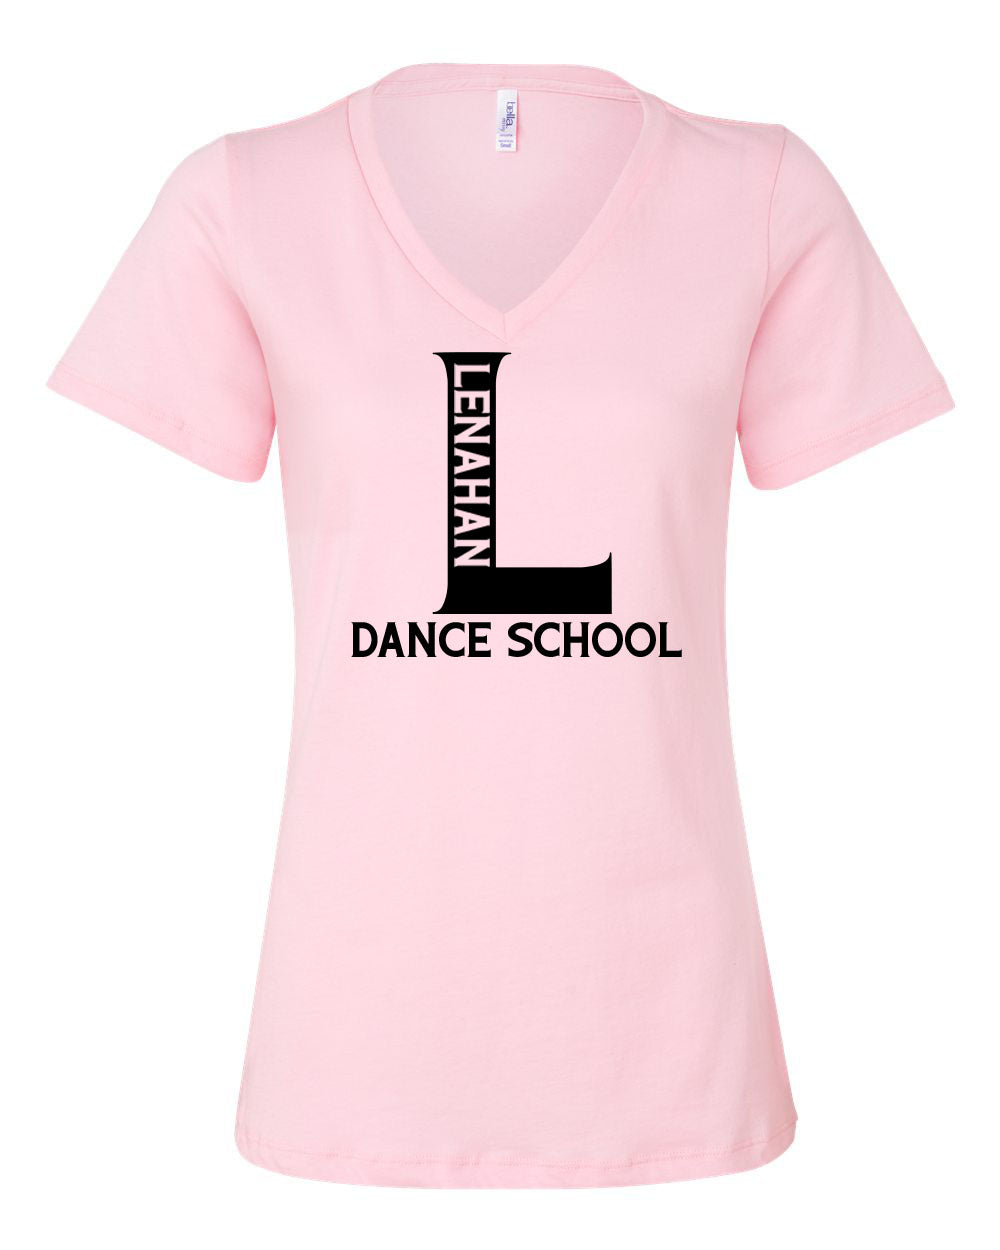 Lenahan Dance Design 1 V-neck T-Shirt